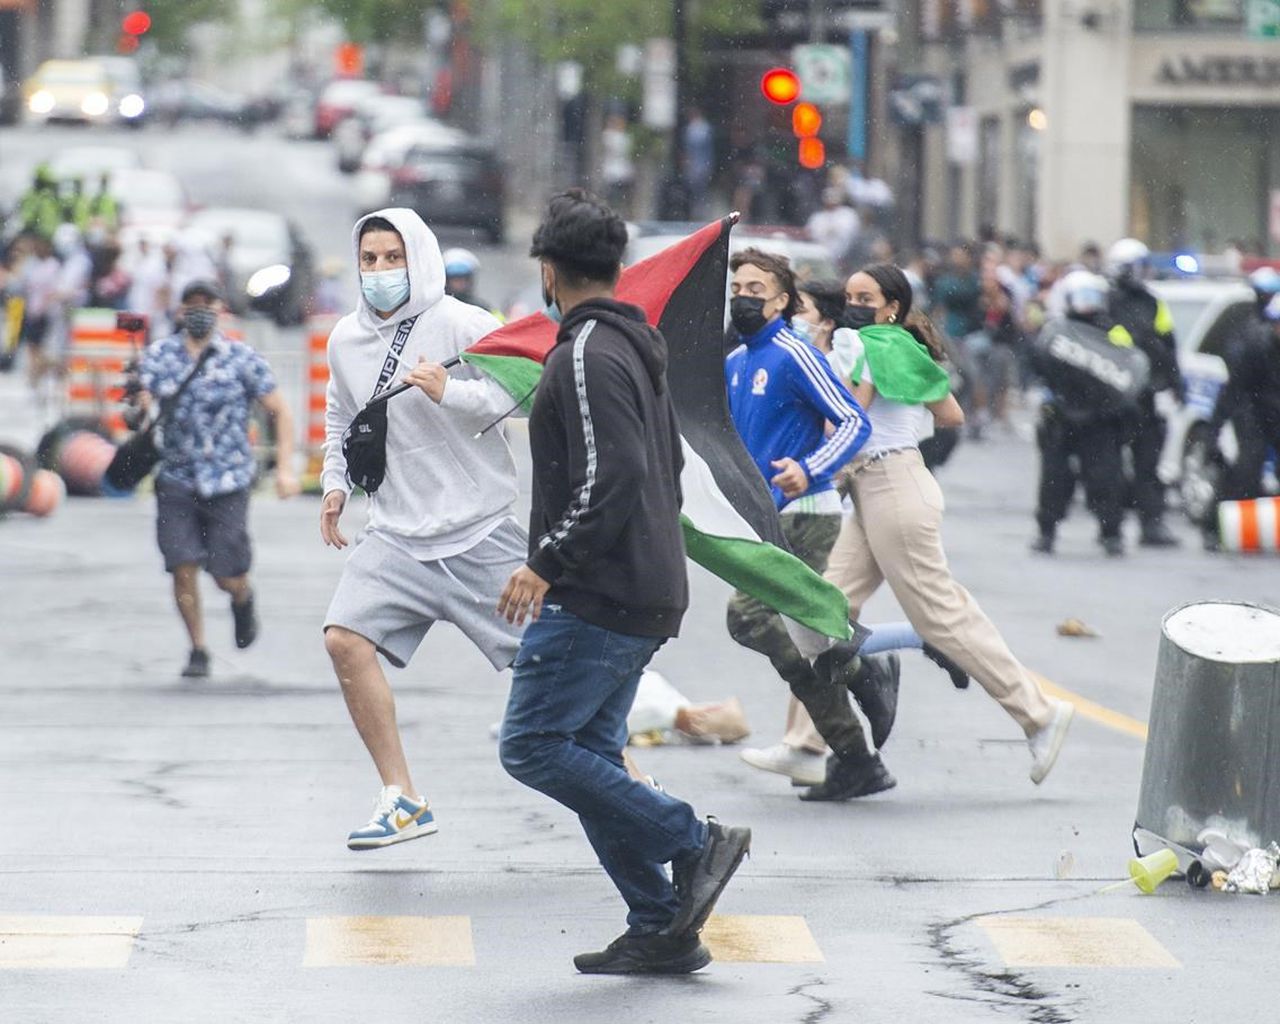 Disipan manifestación de propalestinos y proisraelíes en Canadá